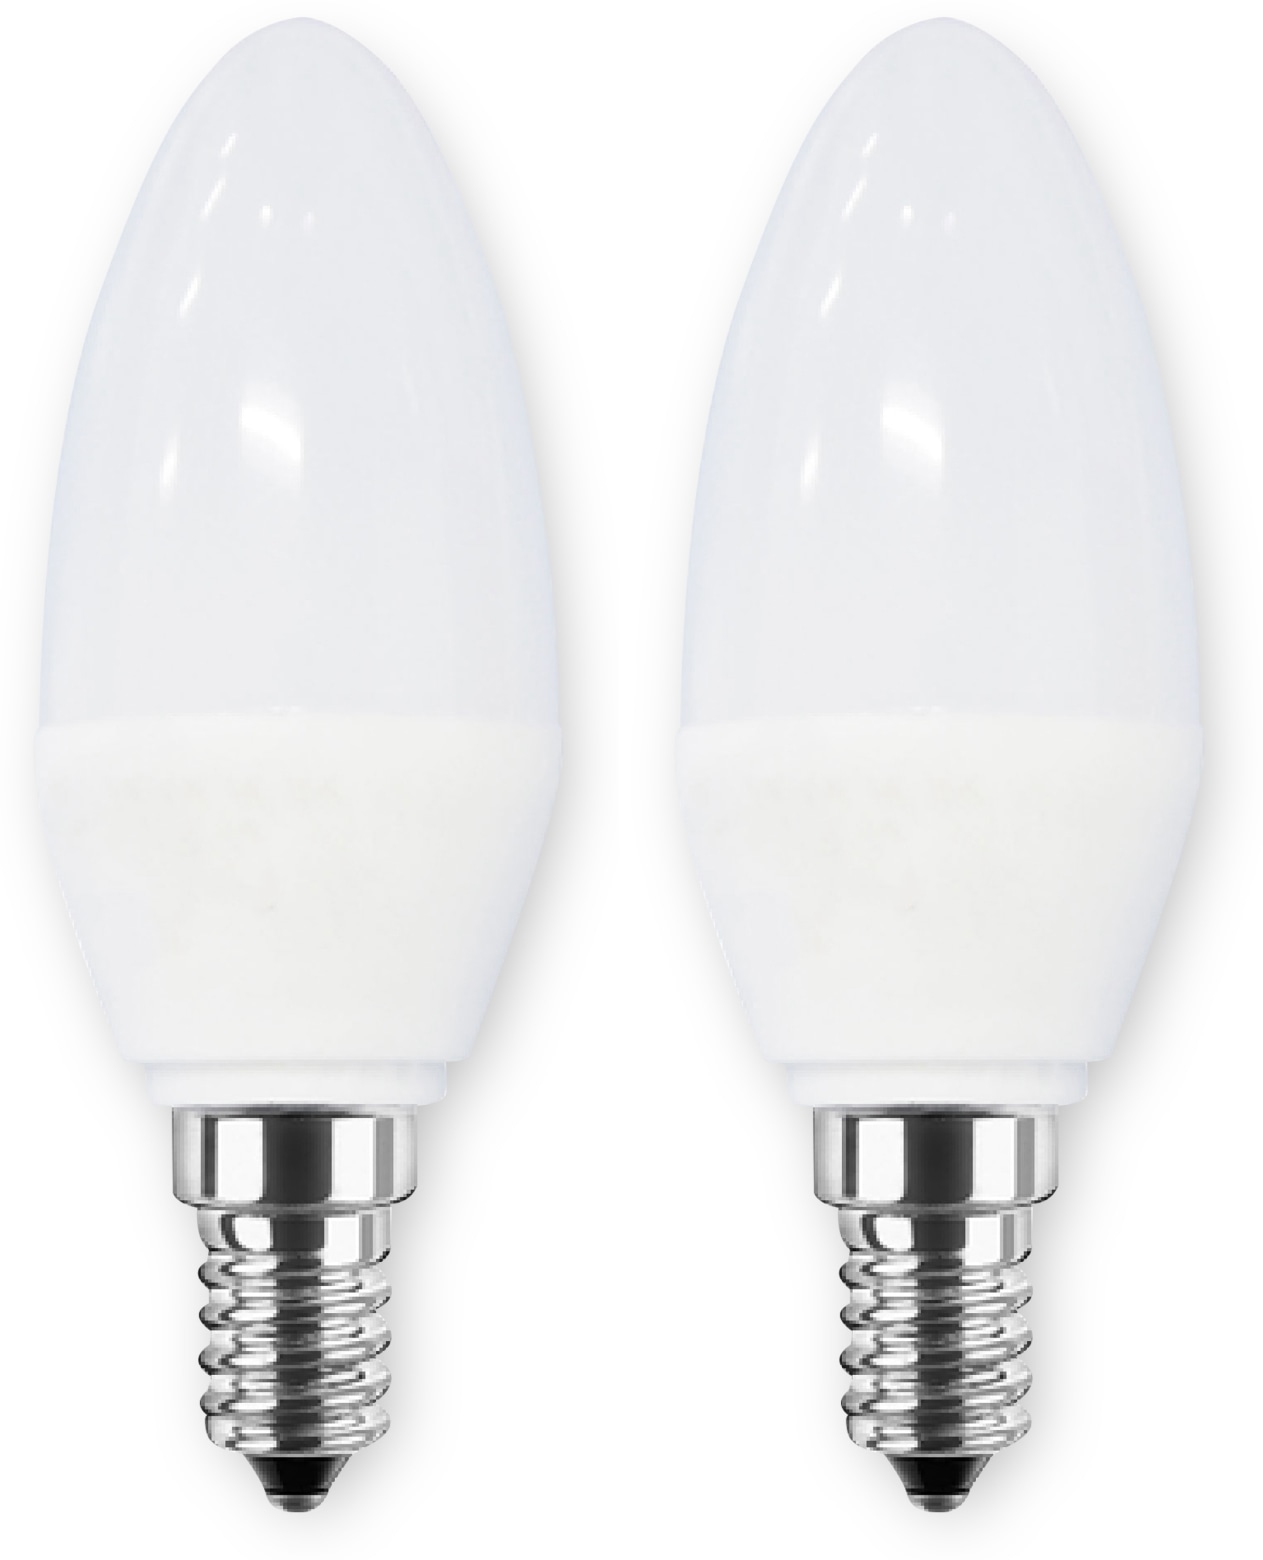 BLULAXA LED-Lampe Kerze, E14, 5 W, 470 lm, 2700 K, 2 Stück